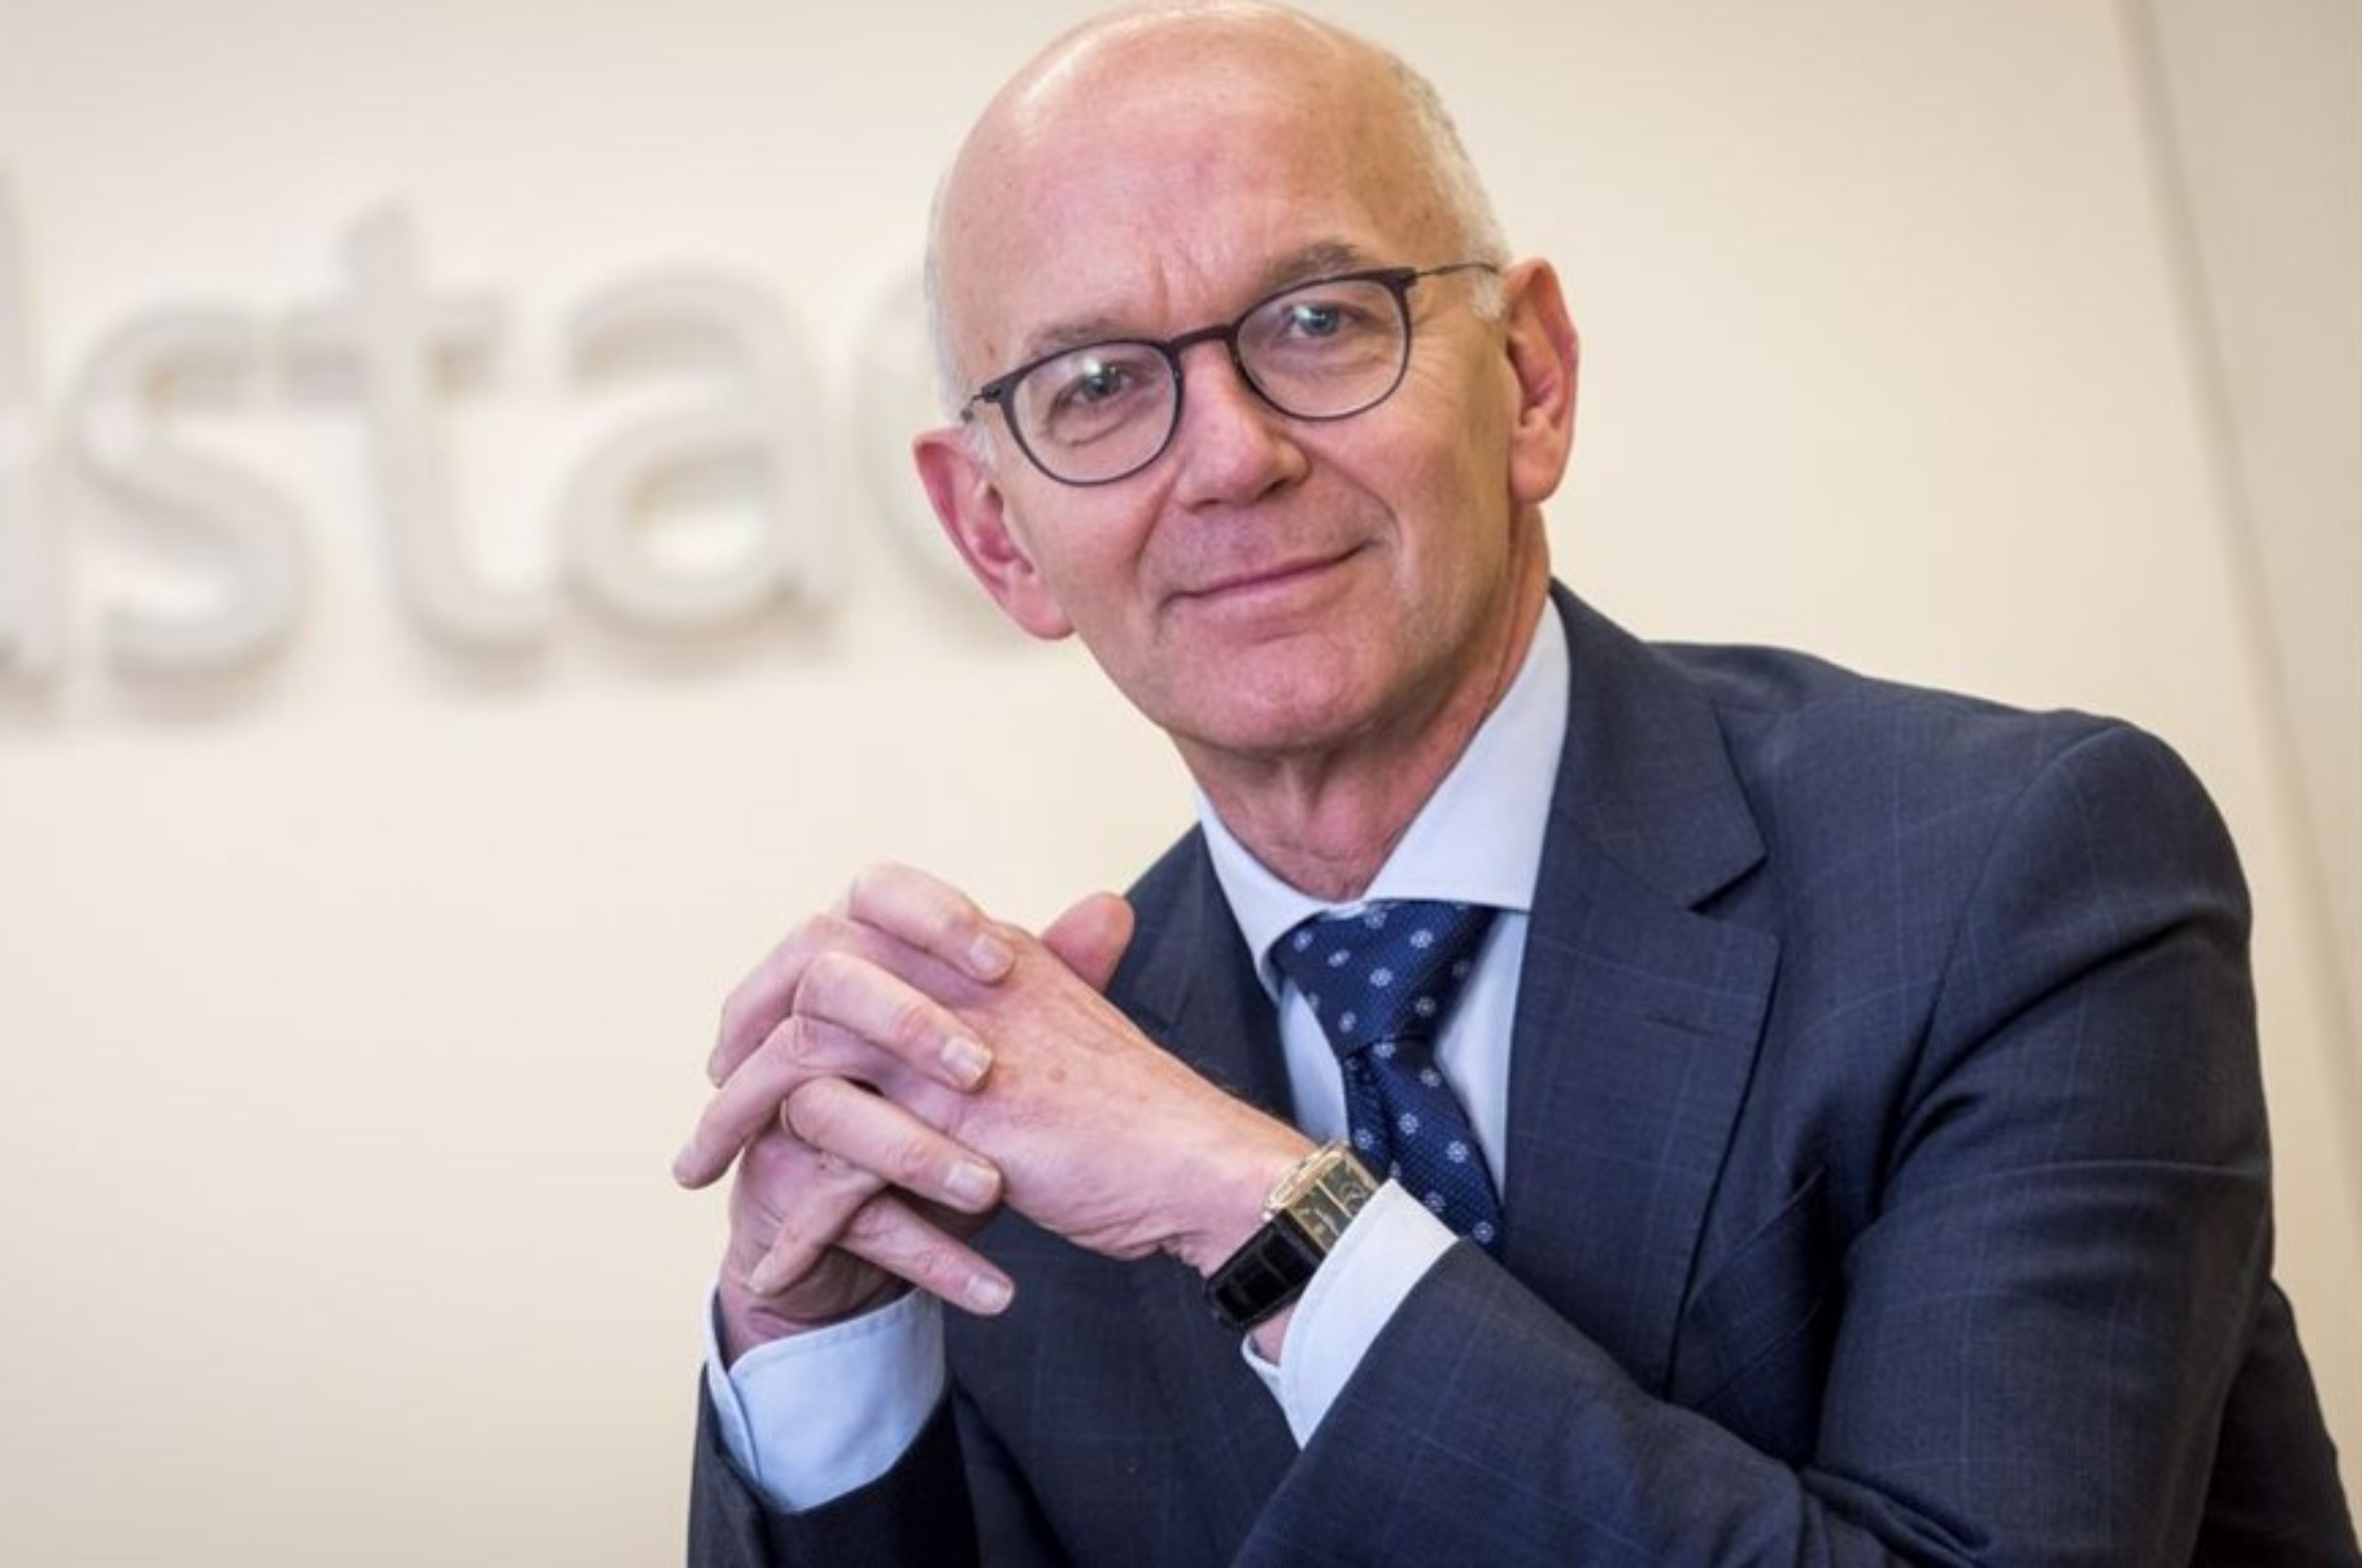 CEO, Jacques van den Broek